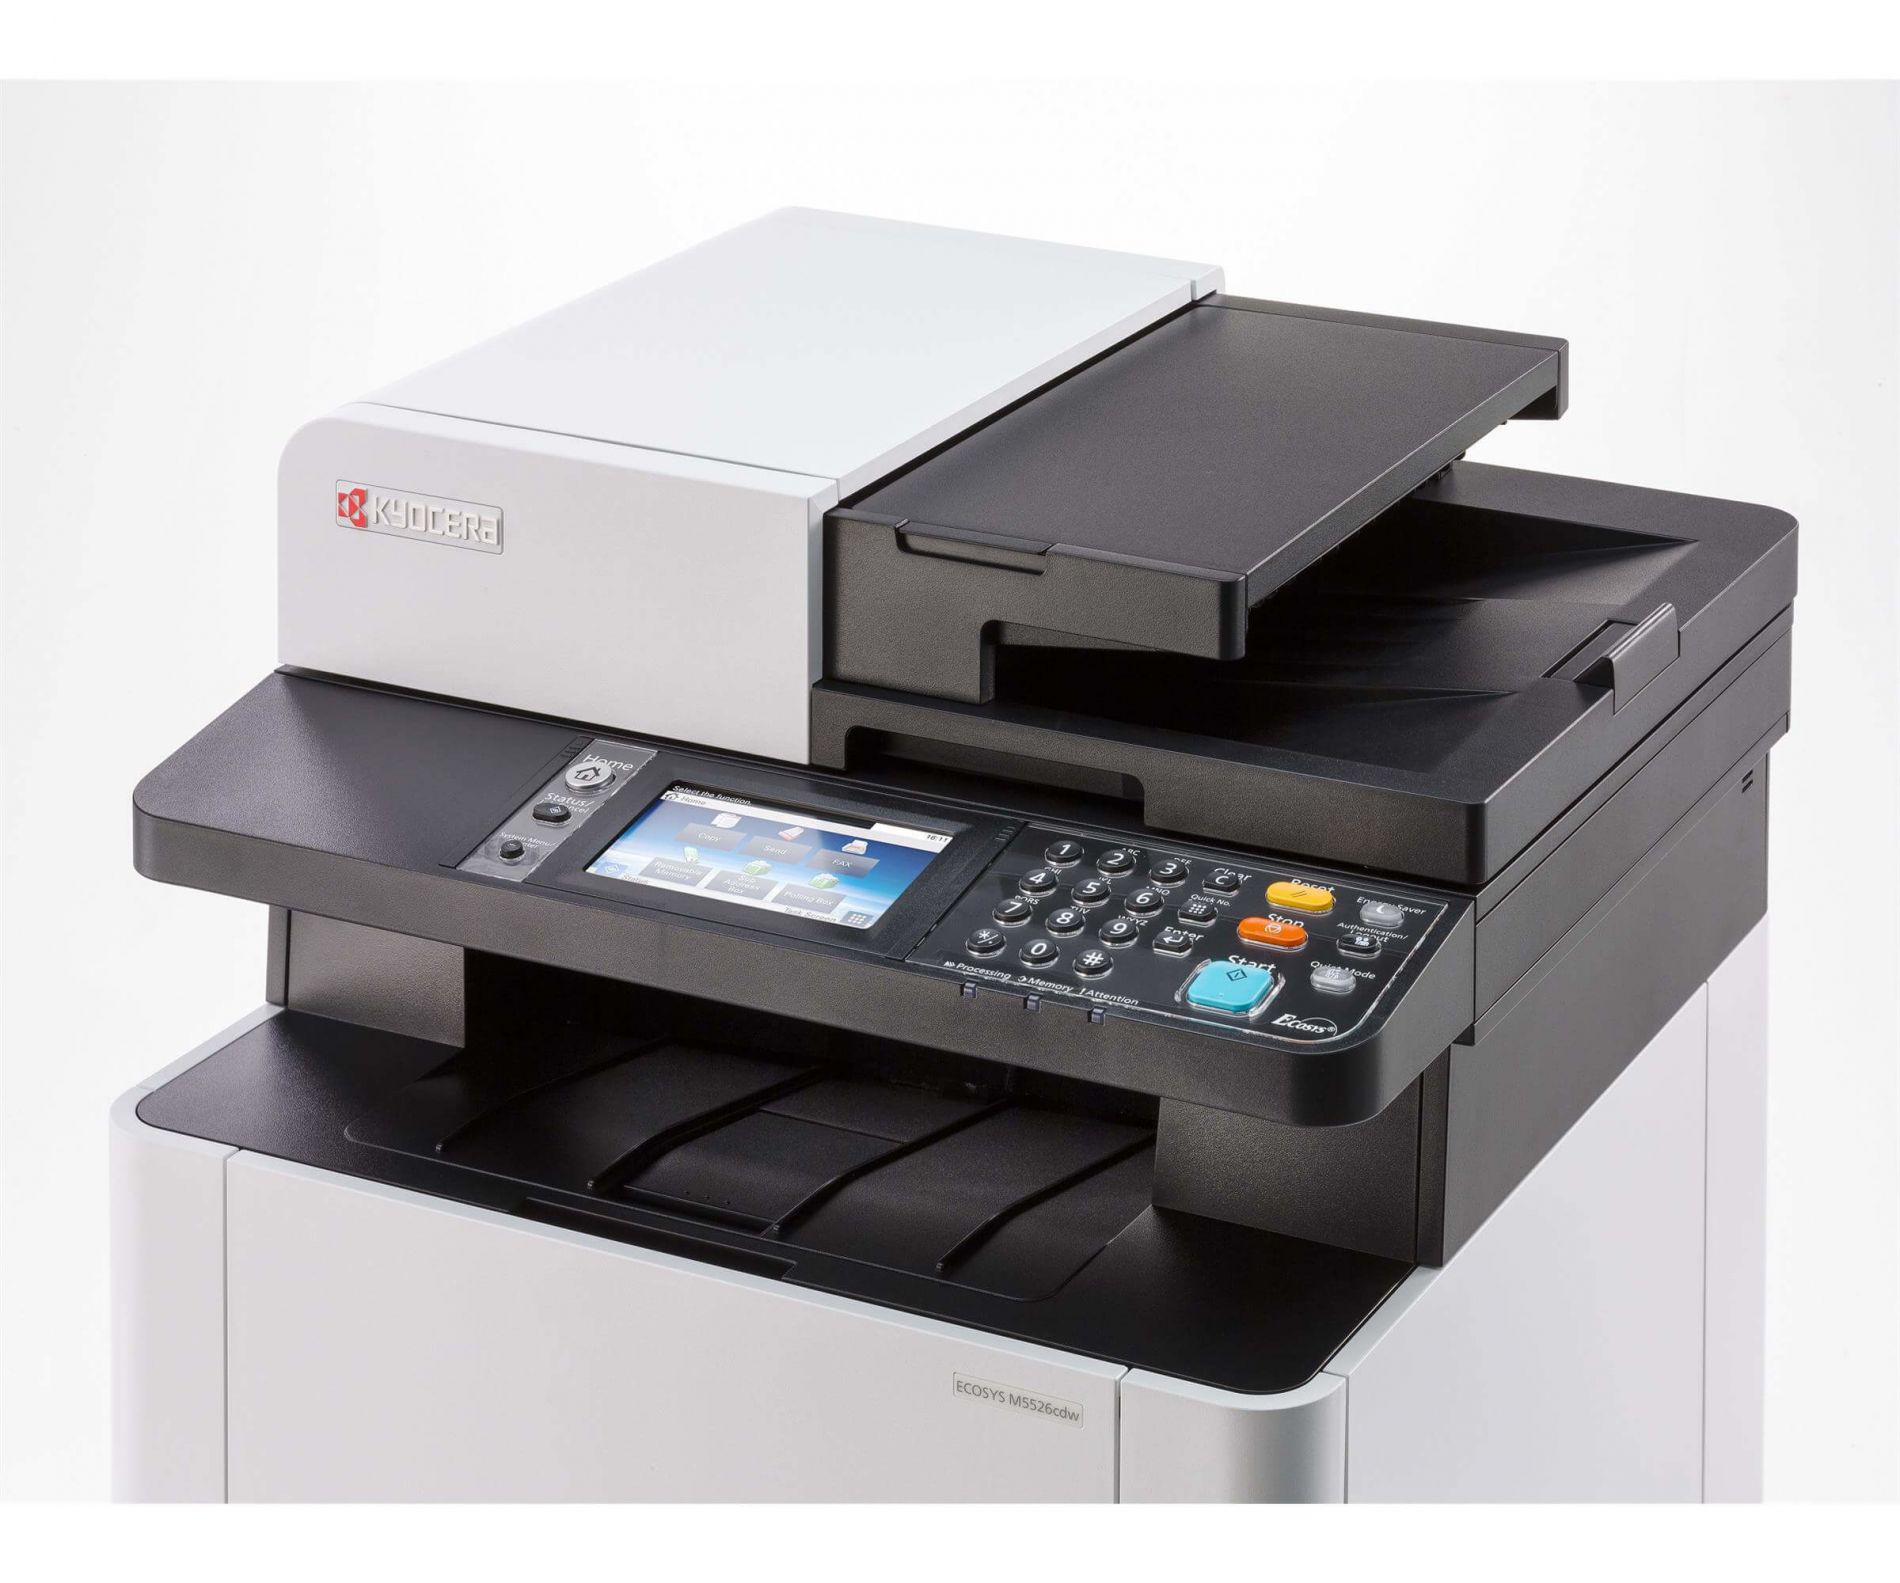 Impresora KYOCERA ECOSYS M5526 cdw26 ppm (en A4 color y B/N)417 x 429 x 495 mm